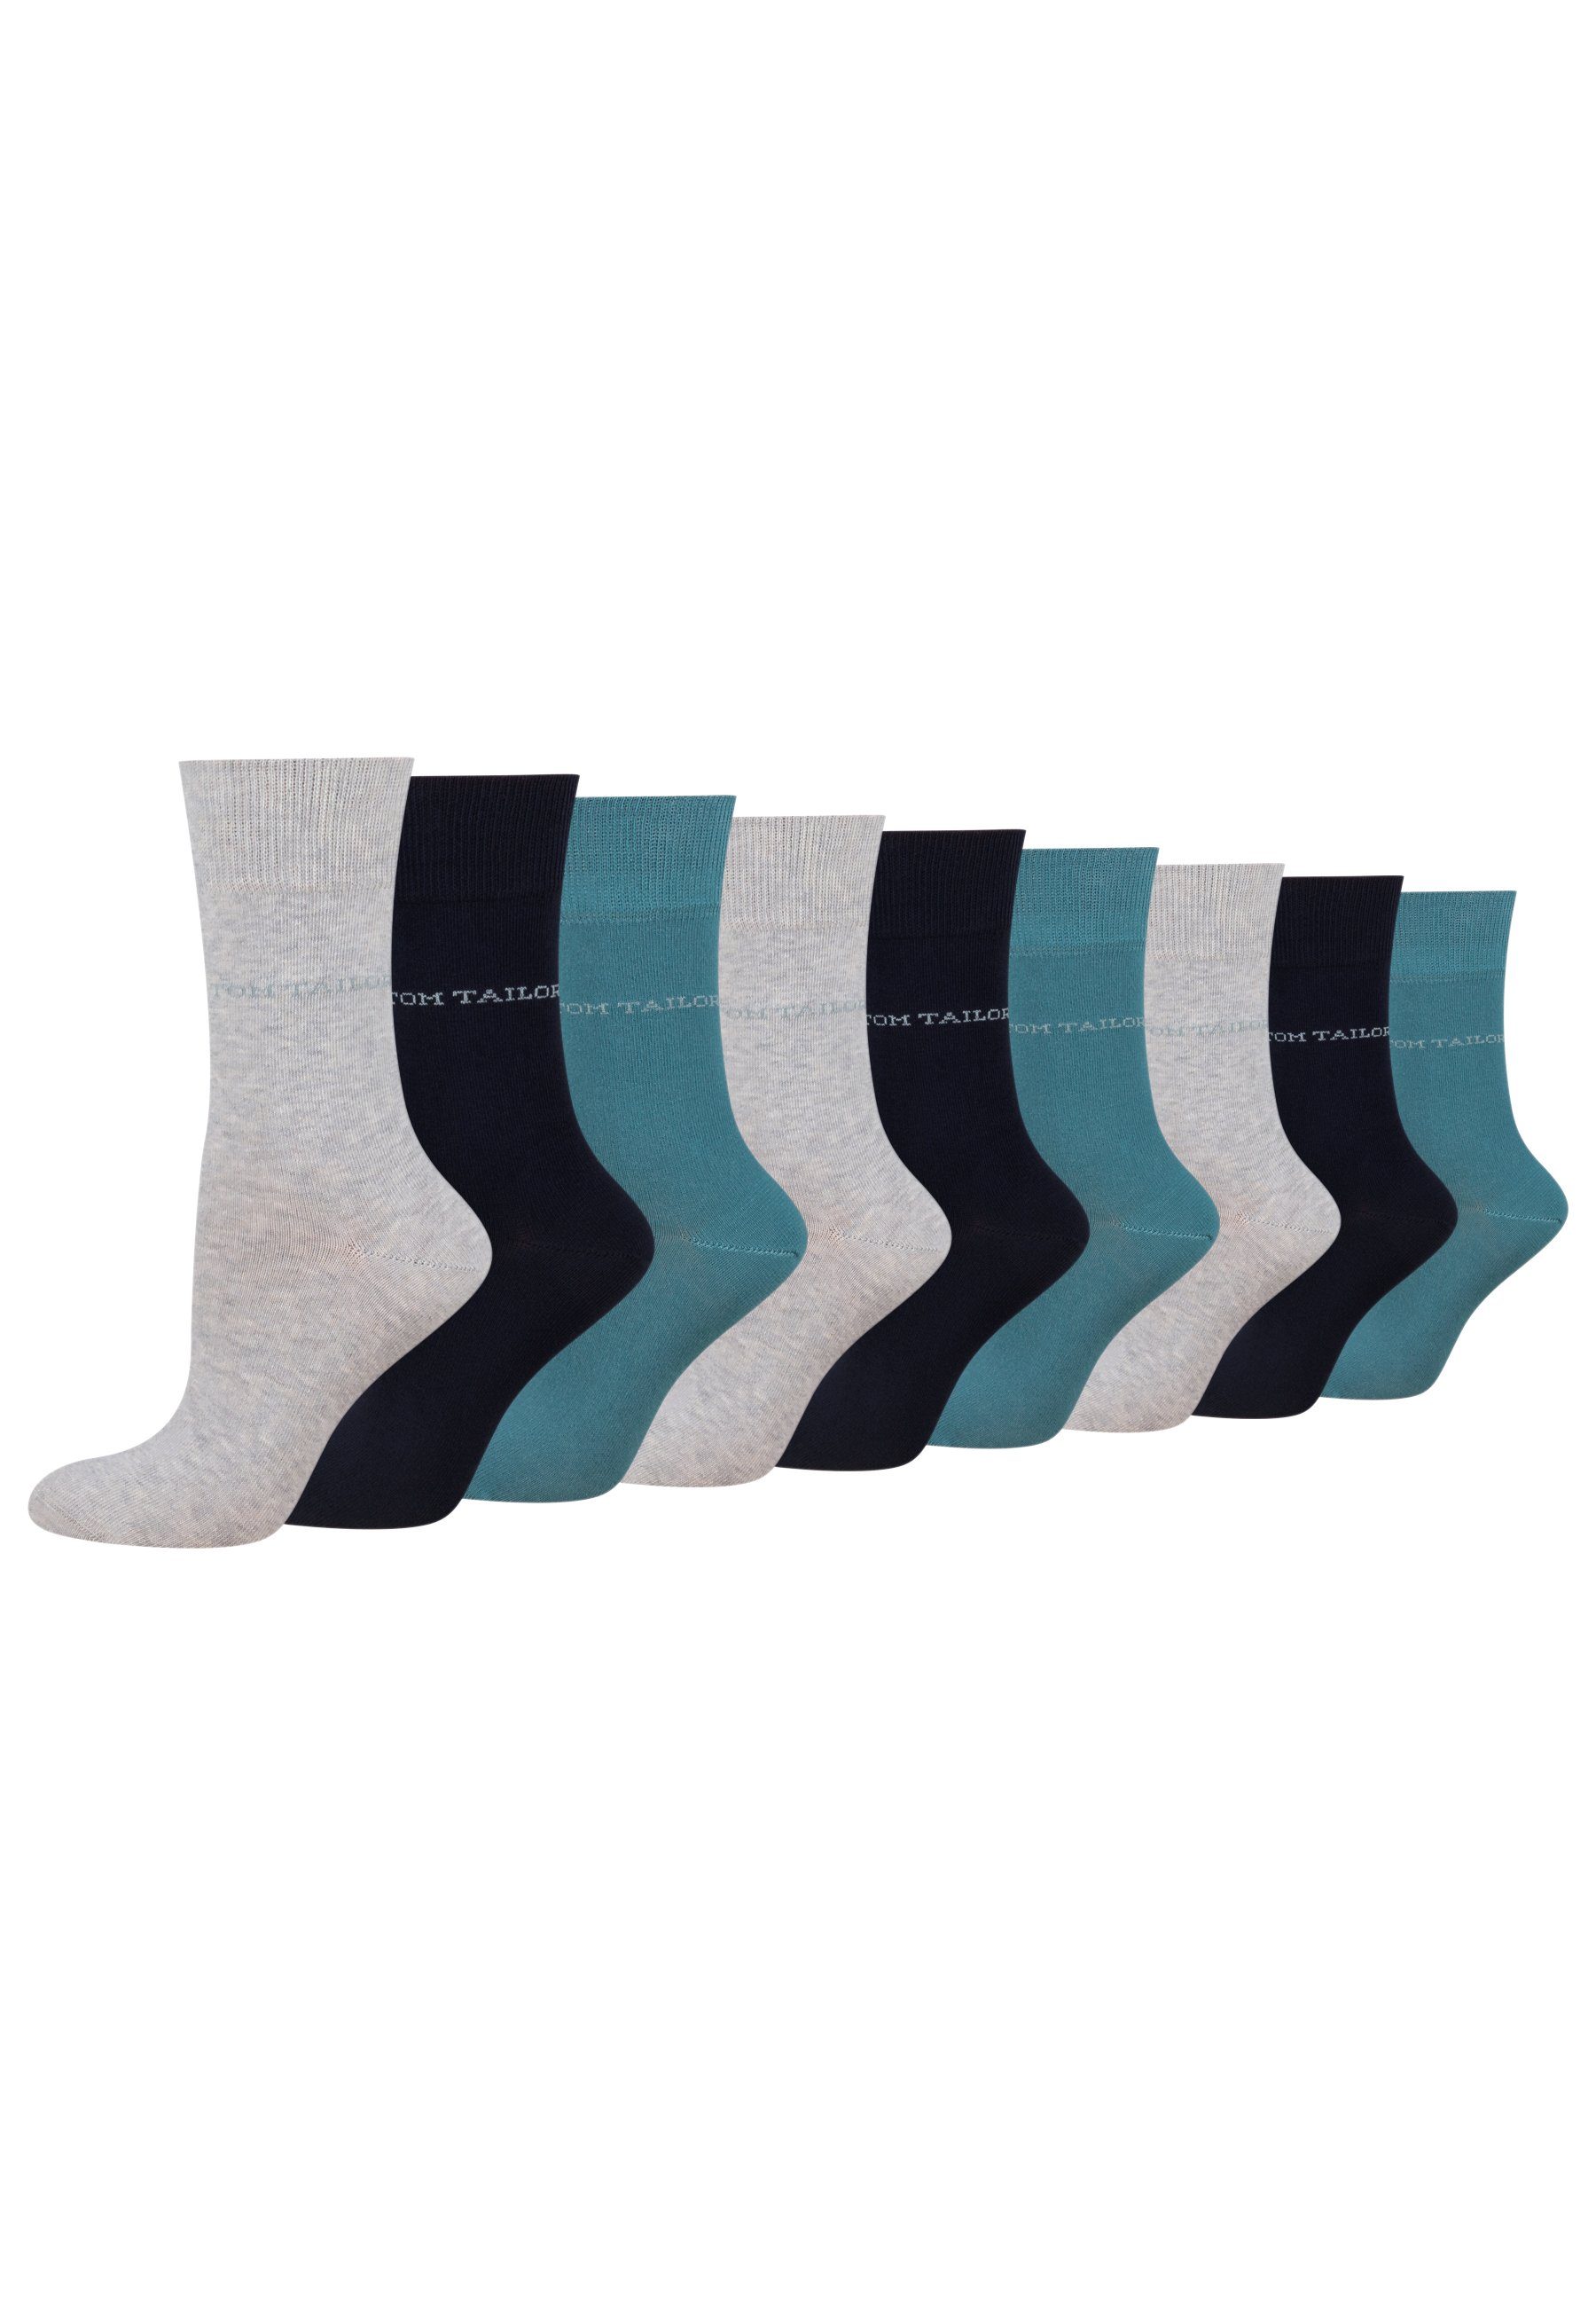 TOM TAILOR Socken 9609820042_9 TOM TAILOR Socken Damen – Baumwollsocken für Alltag und Freizeit 9 Paar warmgrey